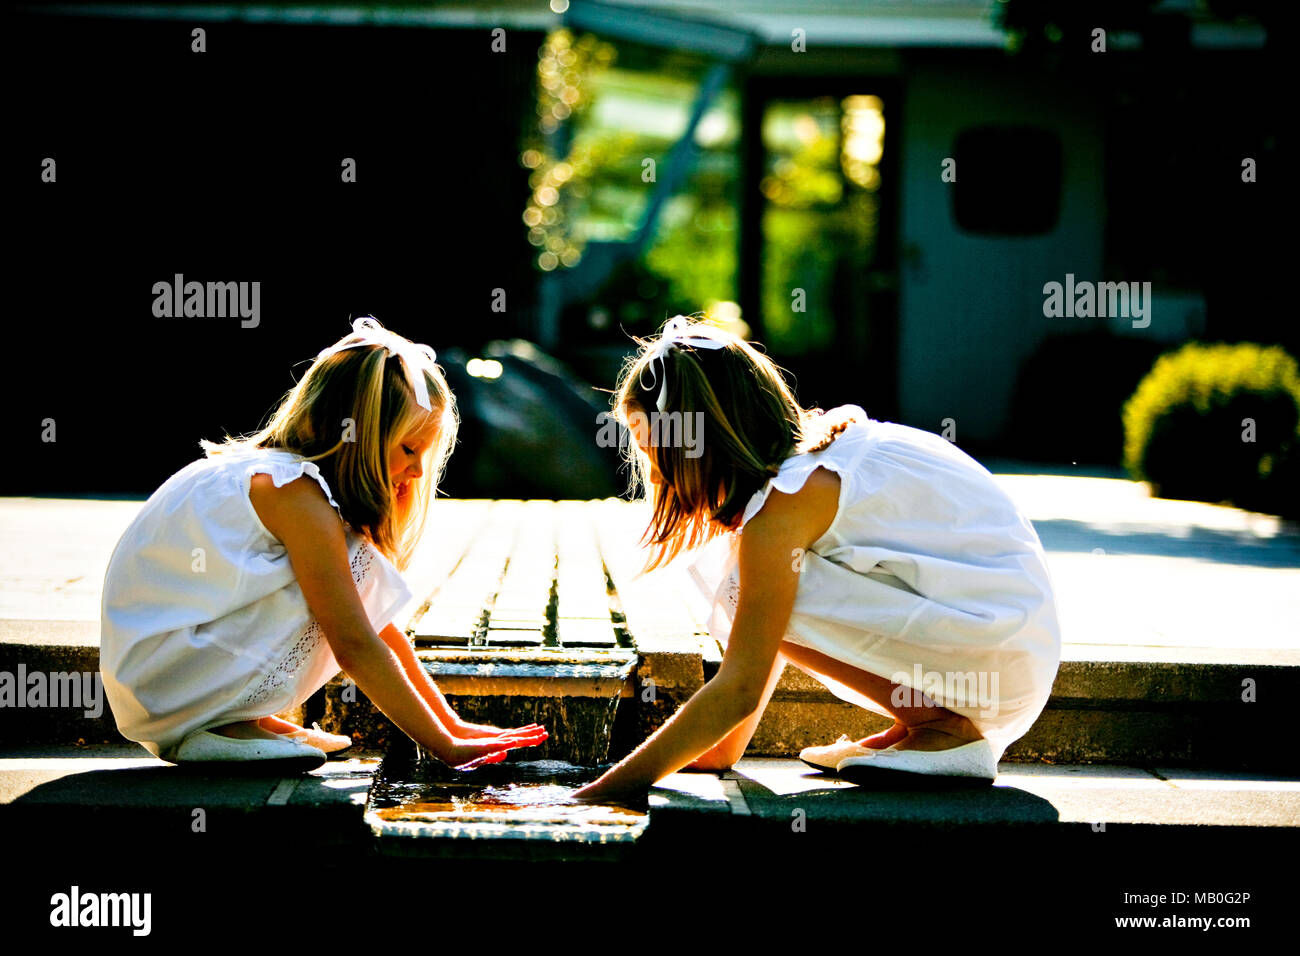 Deux jolies jeunes filles en jupes blanches et chaussures blanches jouant avec l'eau de la fontaine dans un parc avec la lumière du soleil qui brille de derrière Banque D'Images